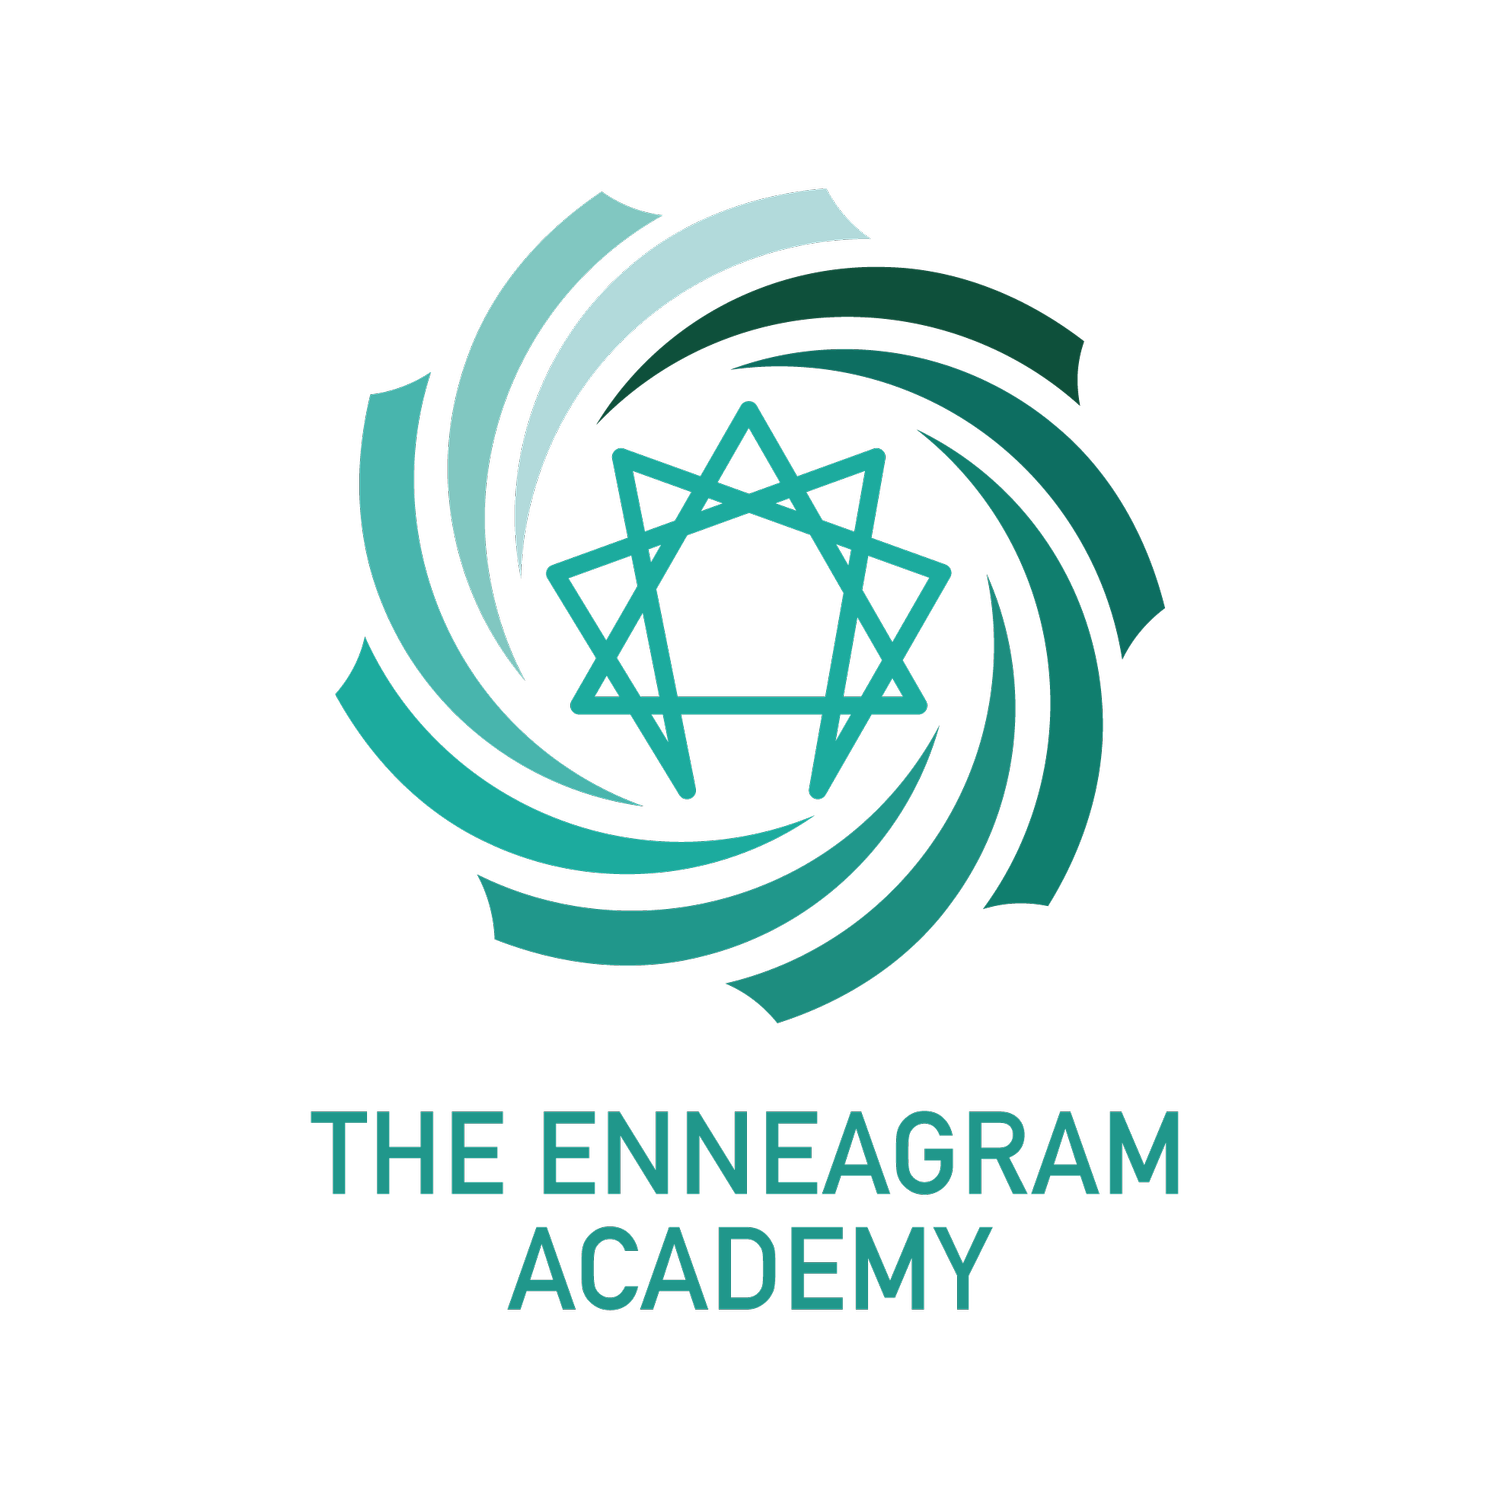 The Enneagram Academy